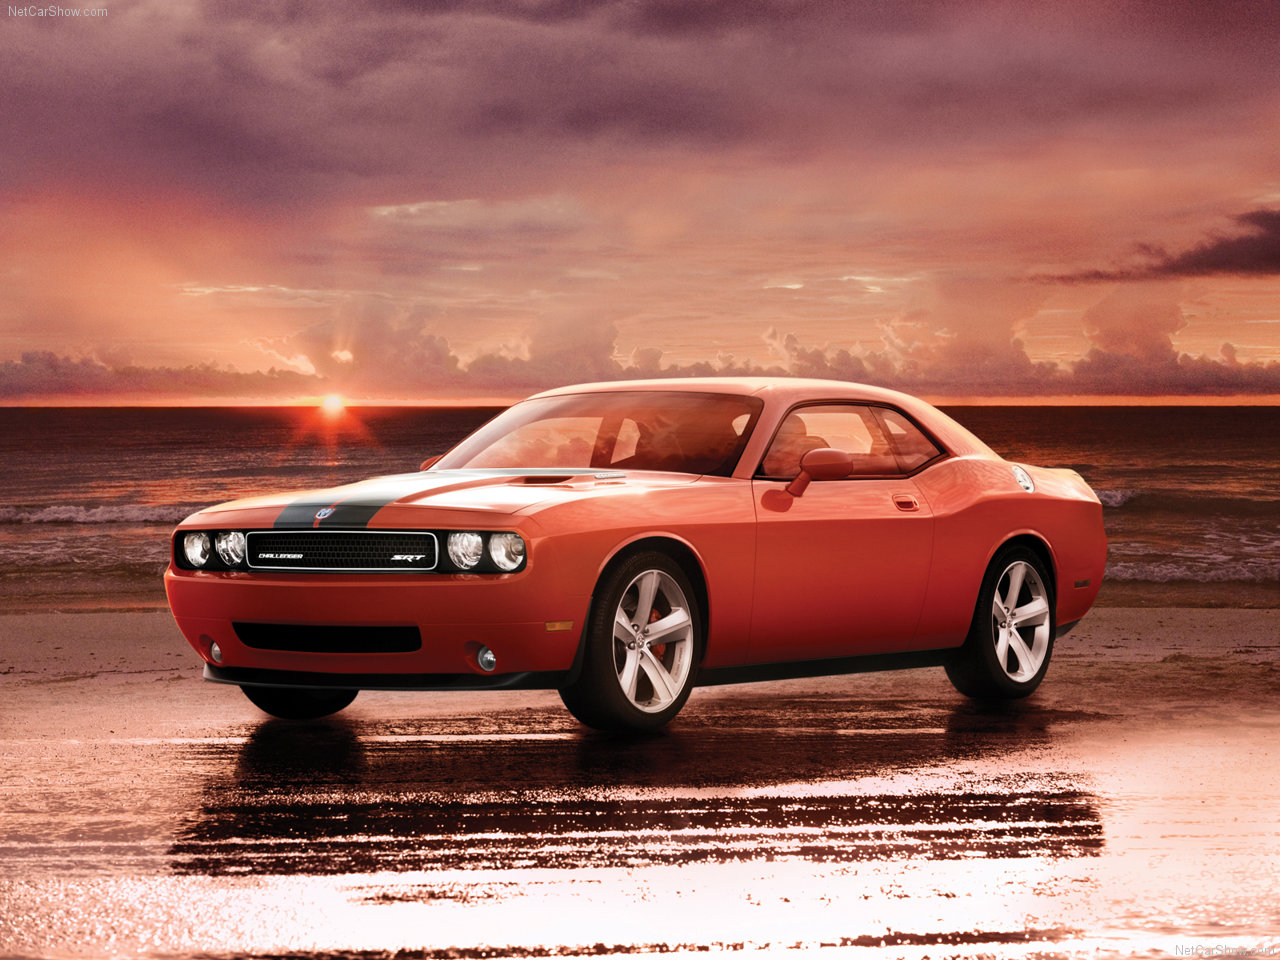 Dodge - Populaire français d'automobiles: 2008 Dodge Challenger SRT8